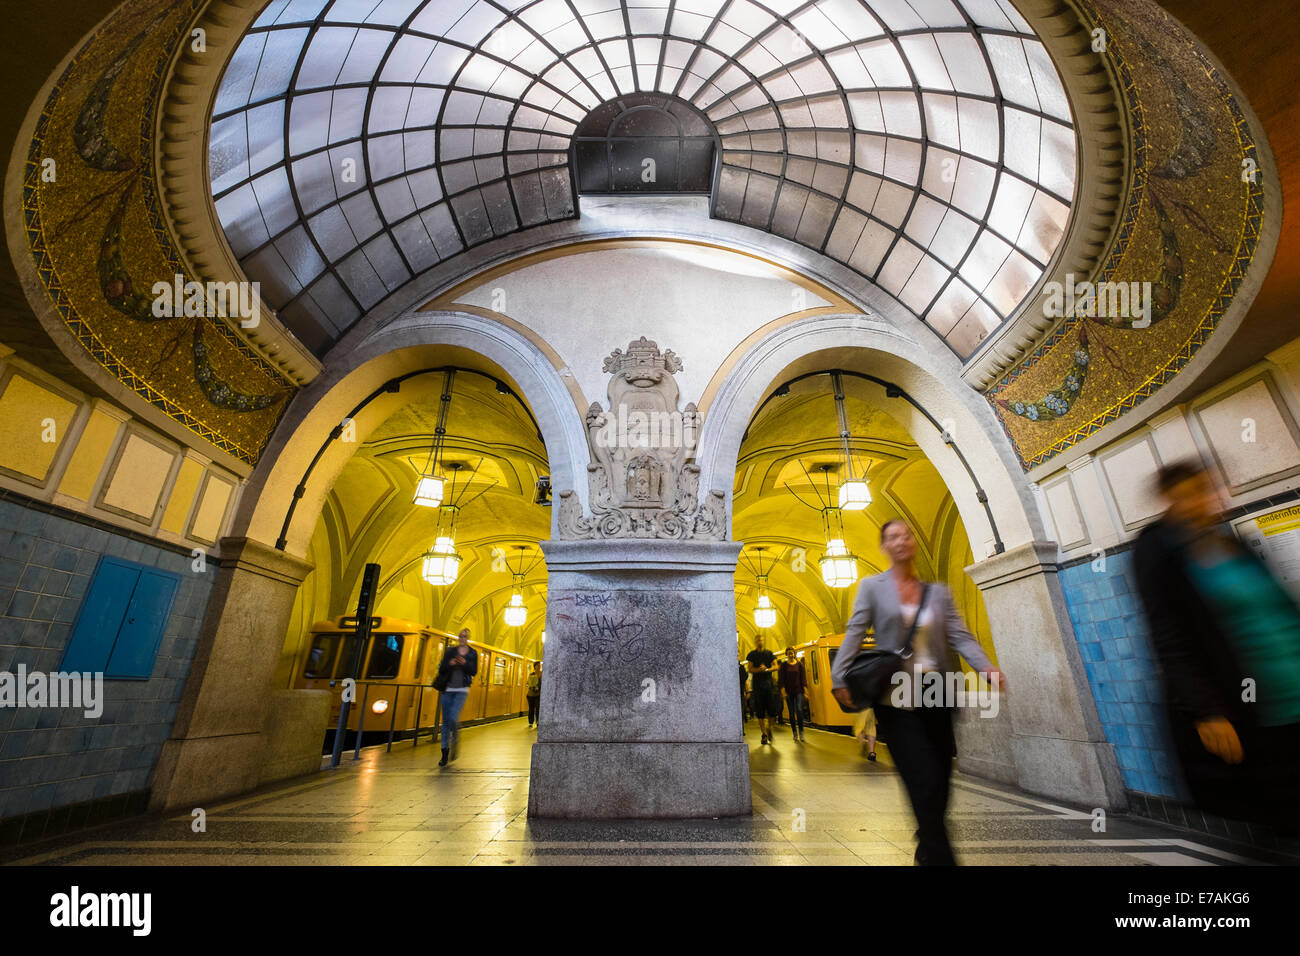 L'architecture ancienne ouvragée Heidelberger Platz à Berlin sur la station de métro de l'Allemagne Banque D'Images